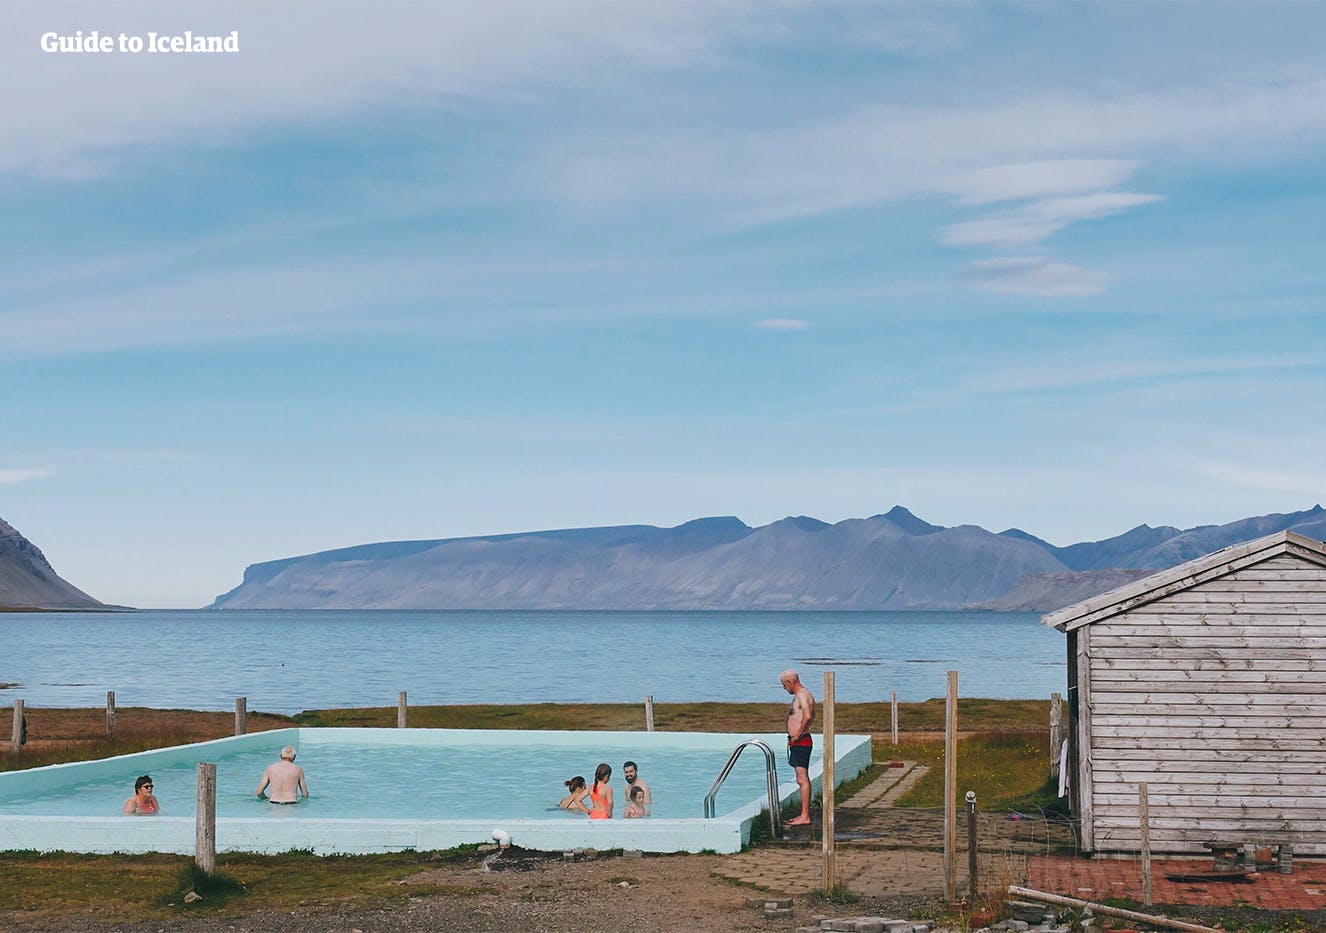 สระว่ายน้ำความร้อนใต้พิภพ Reykjafarðarlaug ในฟยอร์ดทางตะวันตกอันห่างไกลของไอซ์แลนด์